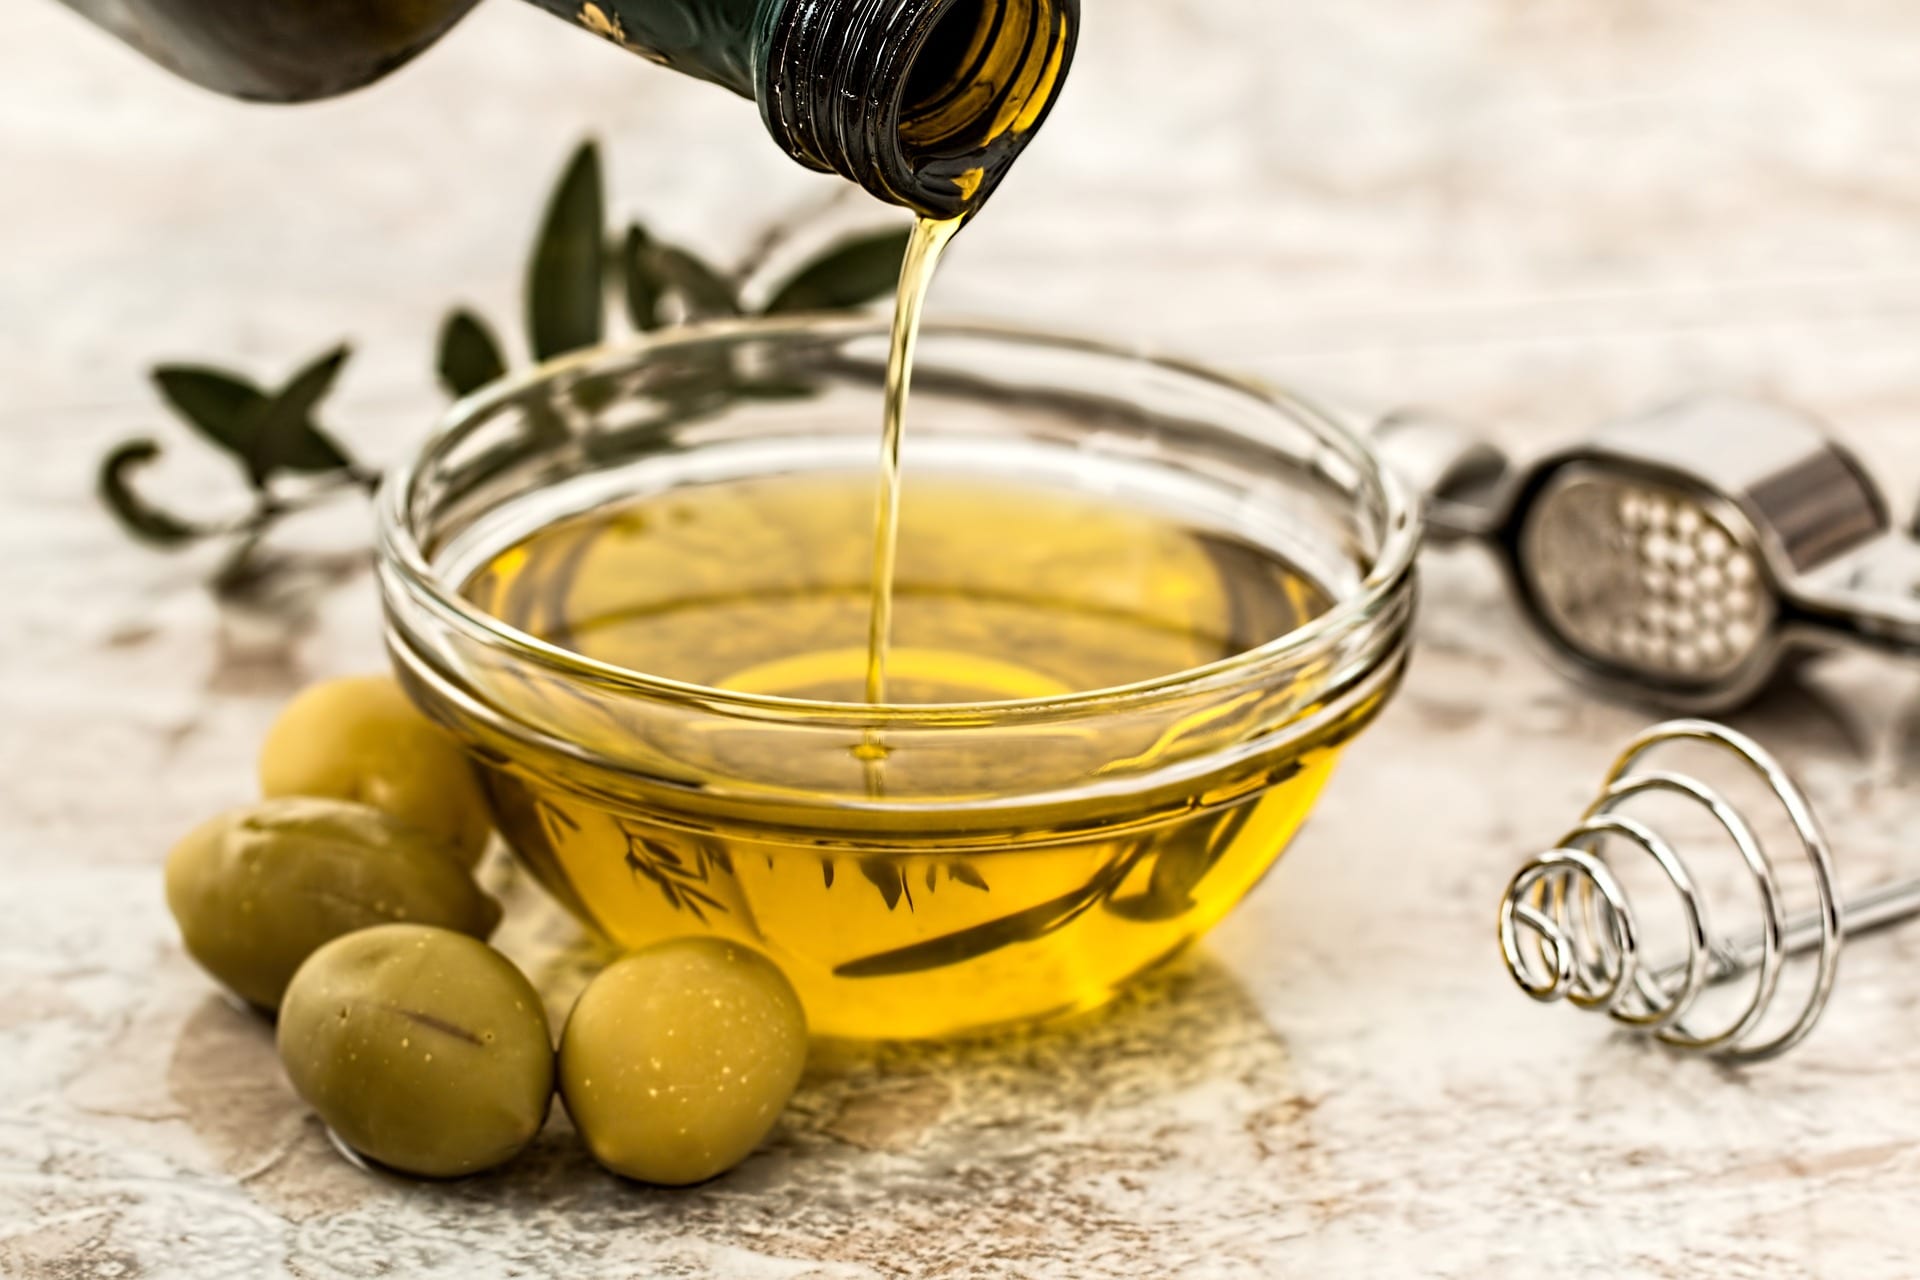 Gambar utama Olive oil untuk masak